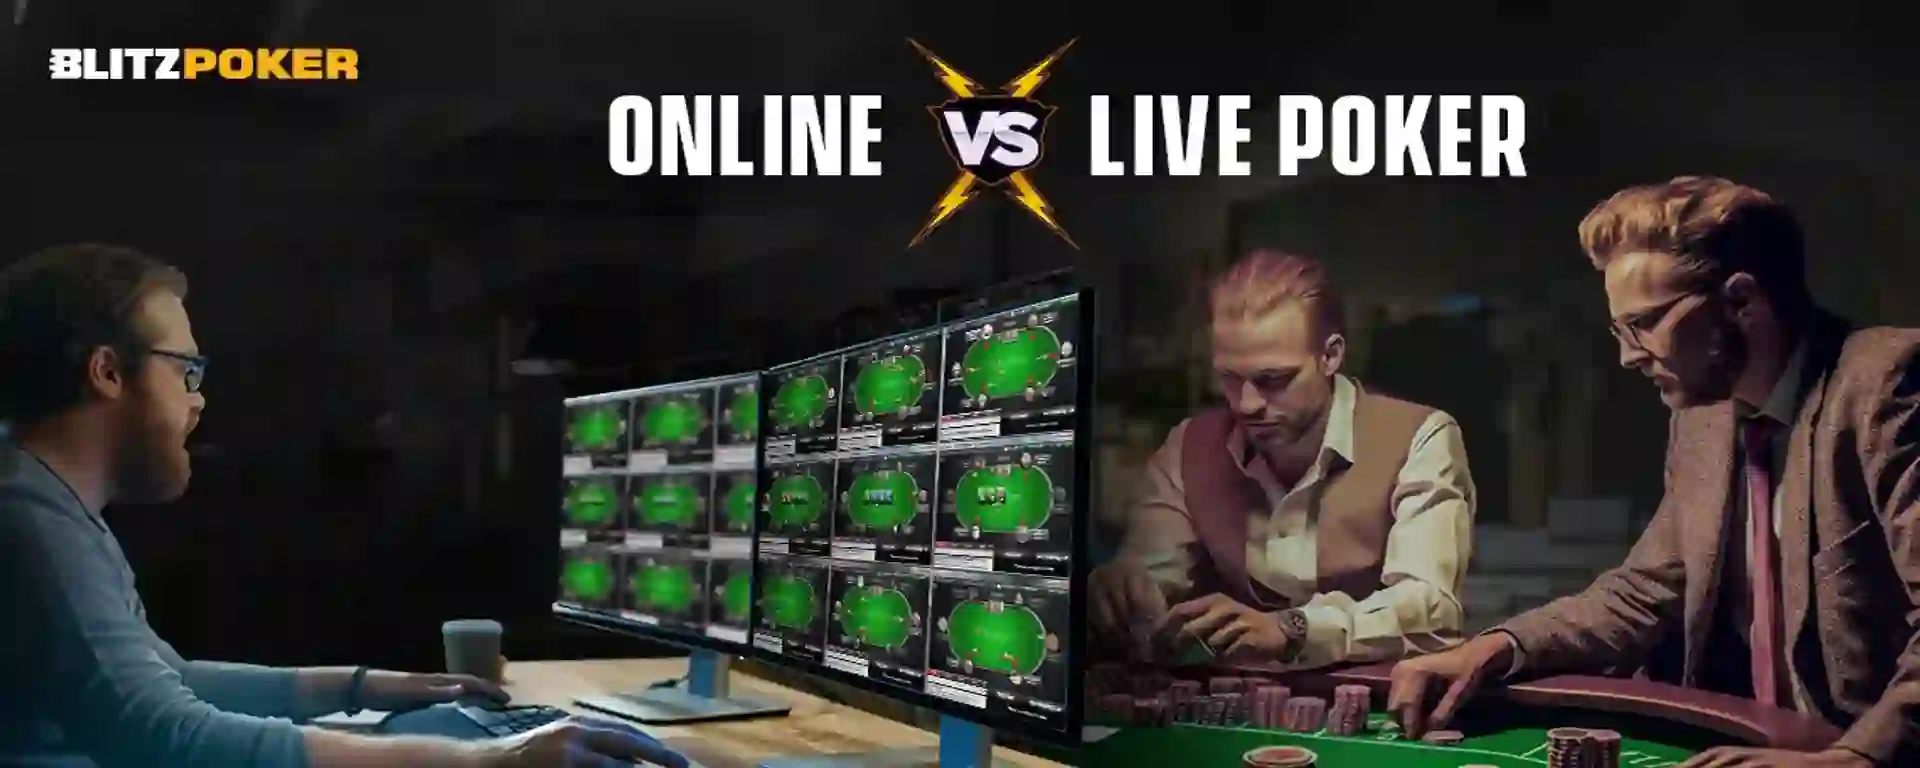 Online Poker vs Live Poker